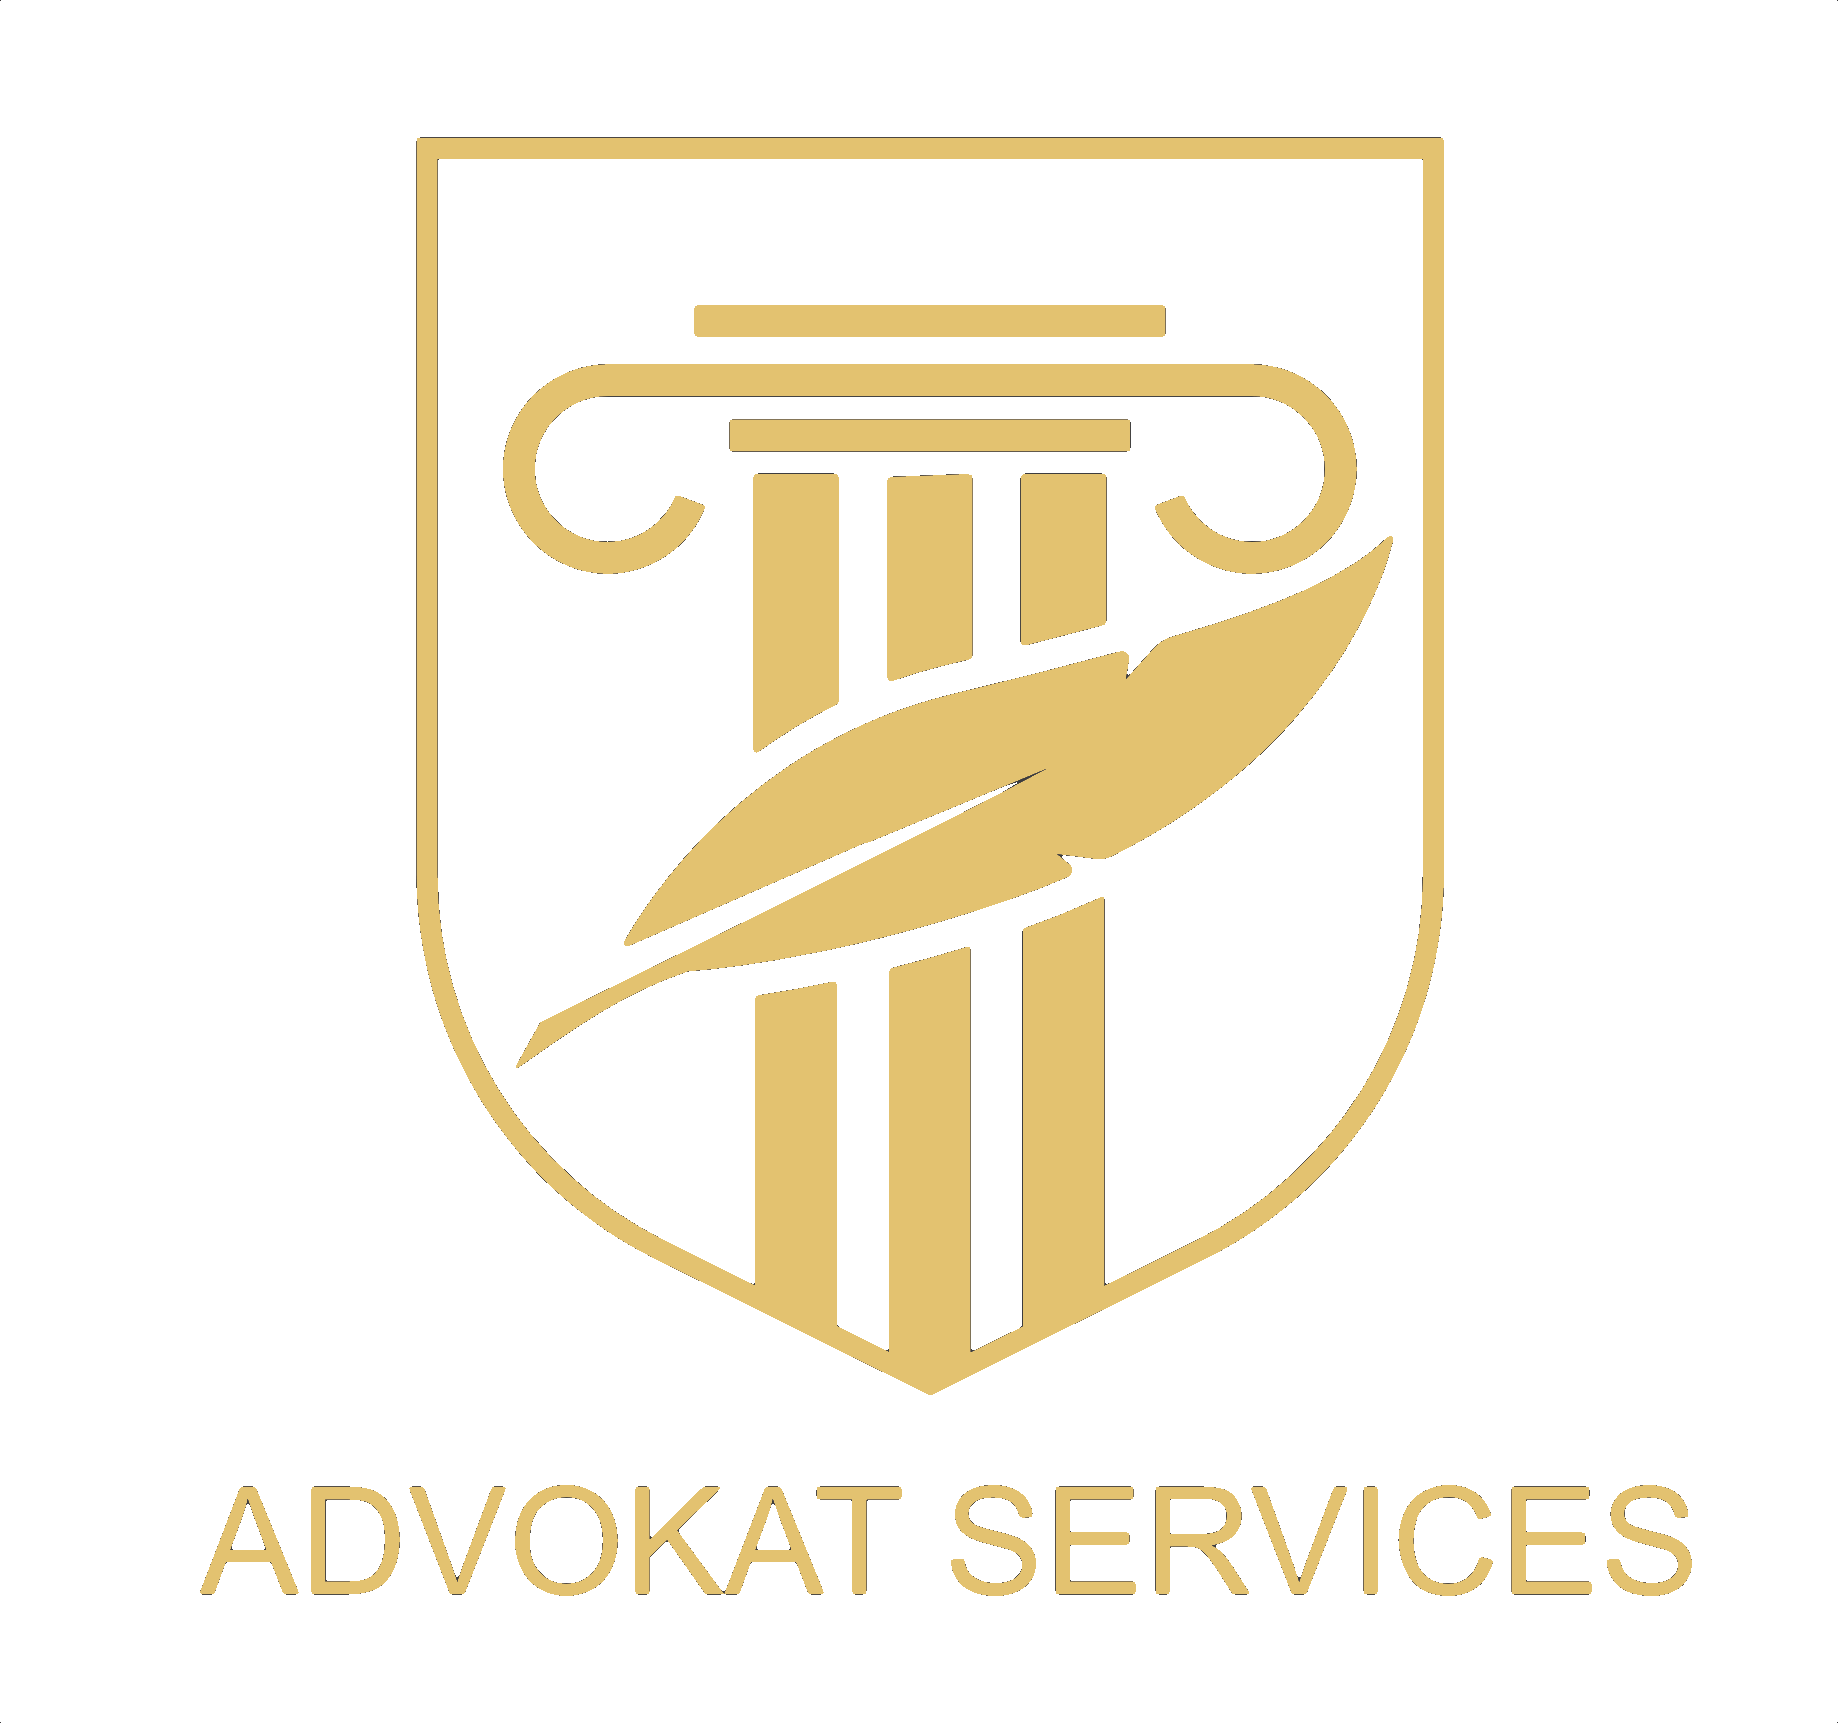 Advokat Services. FREI